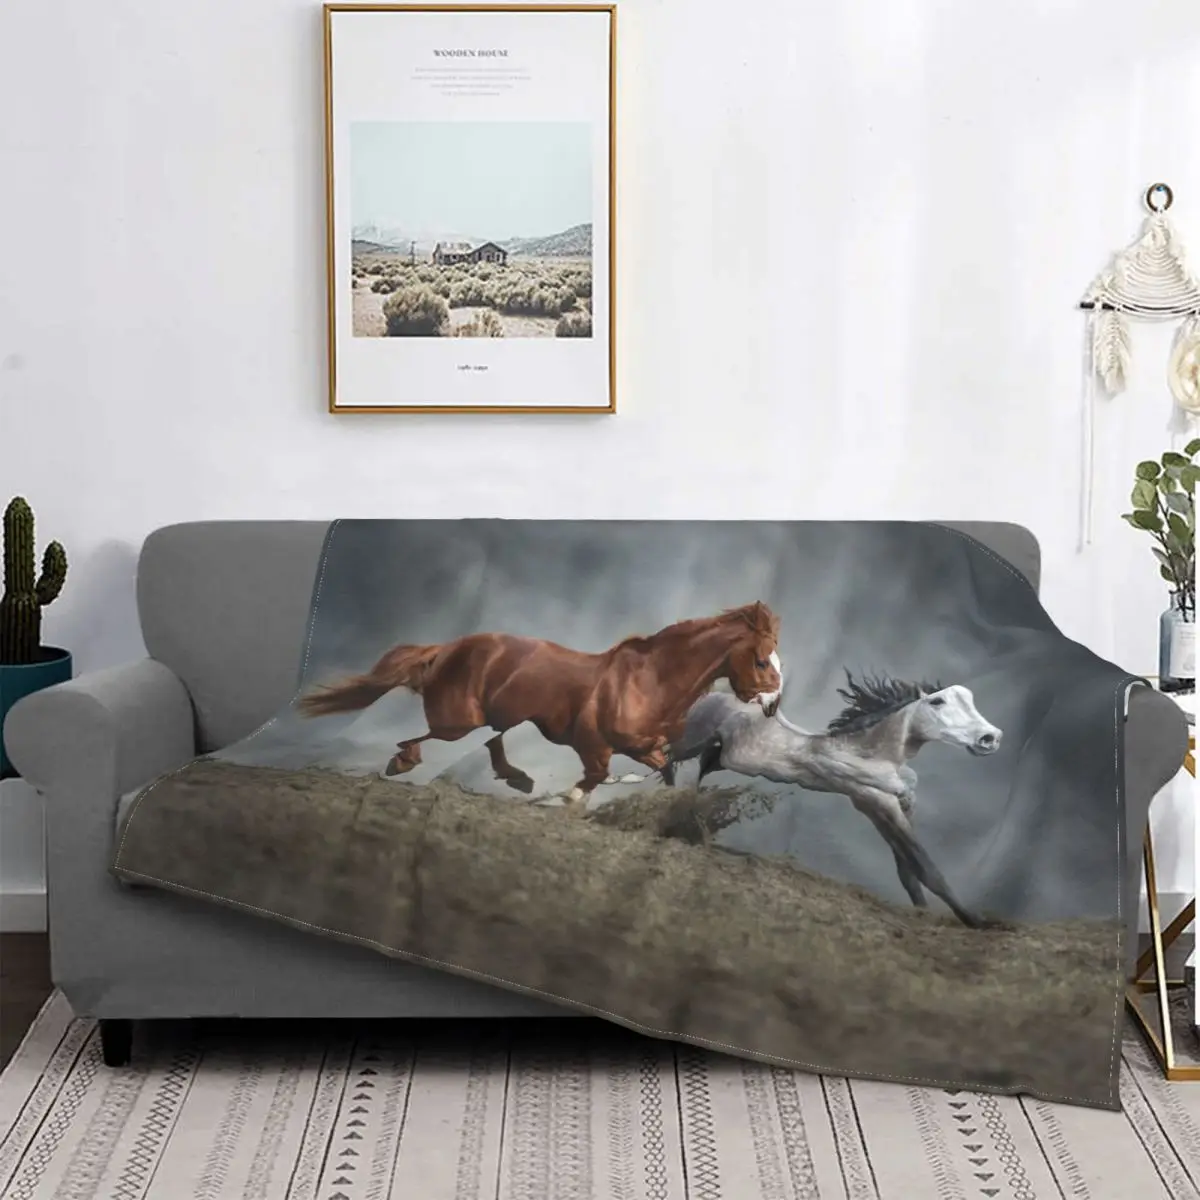 

Белое коричневое вязаное одеяло с рисунком лошади, флисовое мягкое покрывало для любителей животных, покрывало для спальни, дивана, кровати